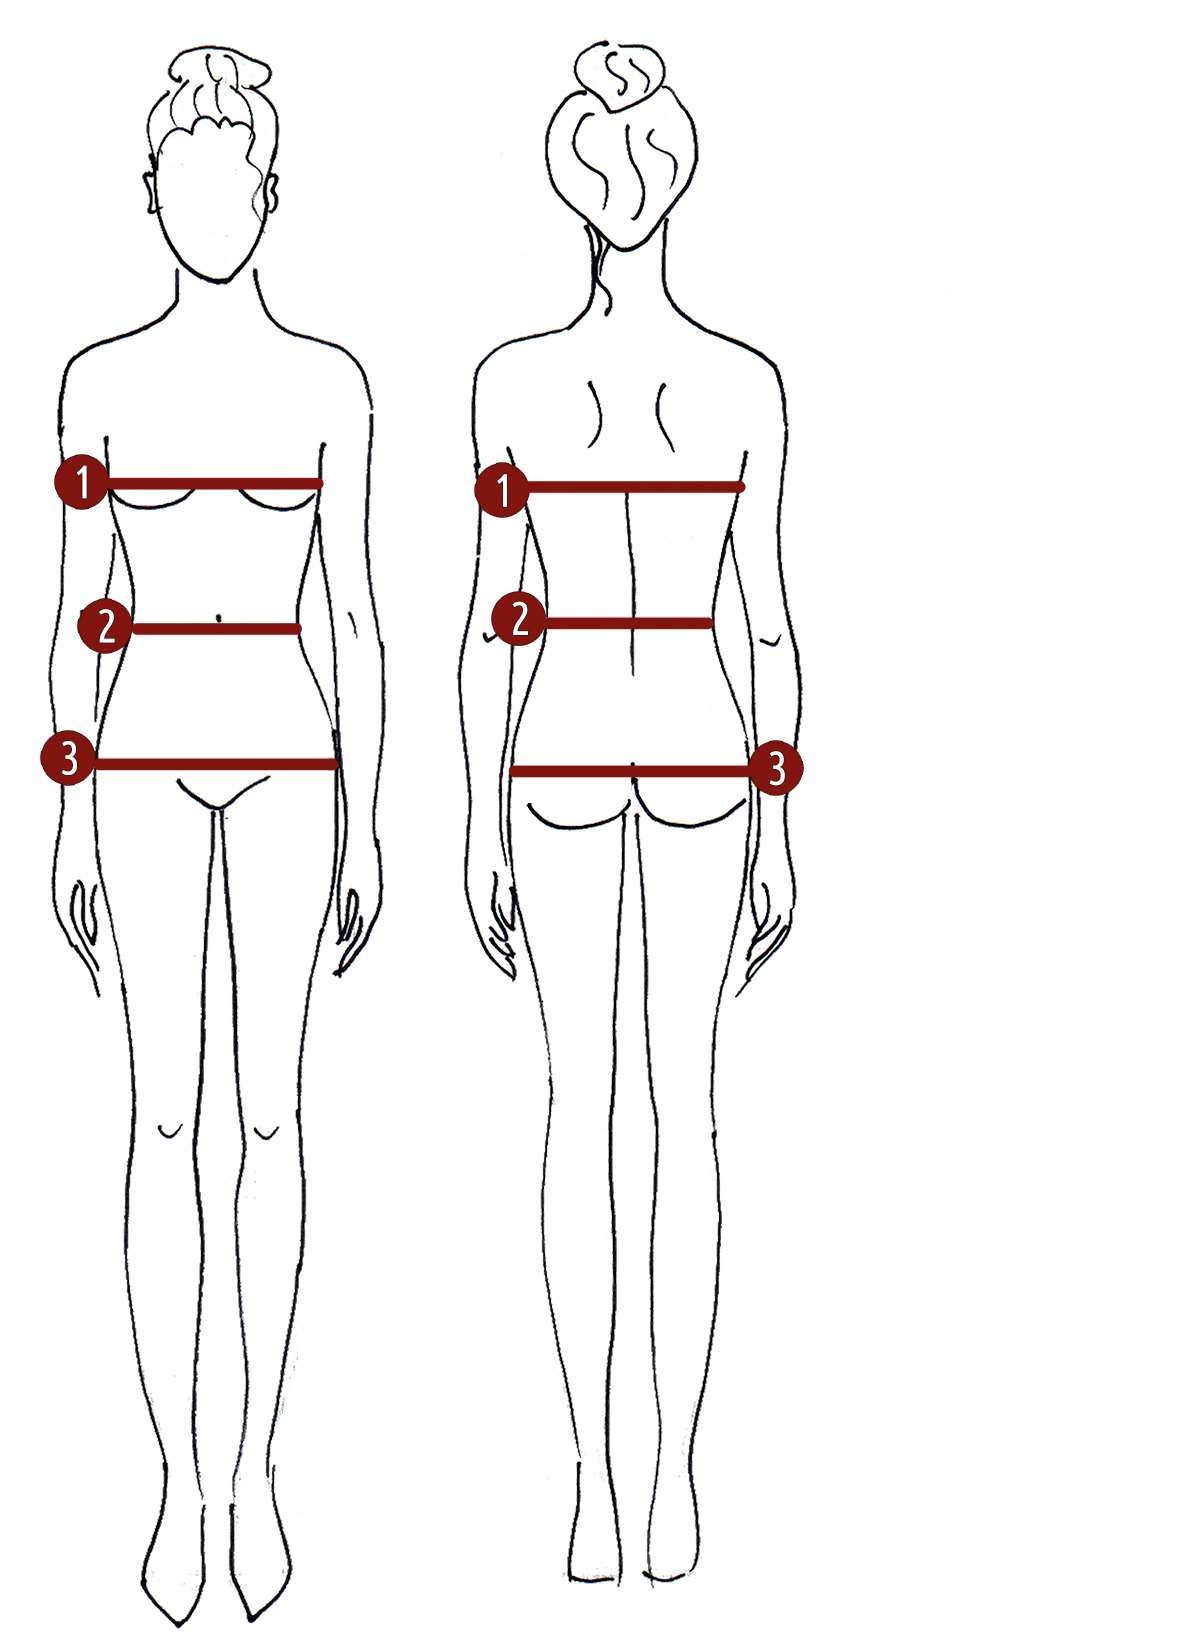 Измерение окружности тела. Как замерять мерки. Как правильно измерить обхват груди- талии и бедер. Как снять мерку обхват бедер. Как правильно измерять талию и бедра.